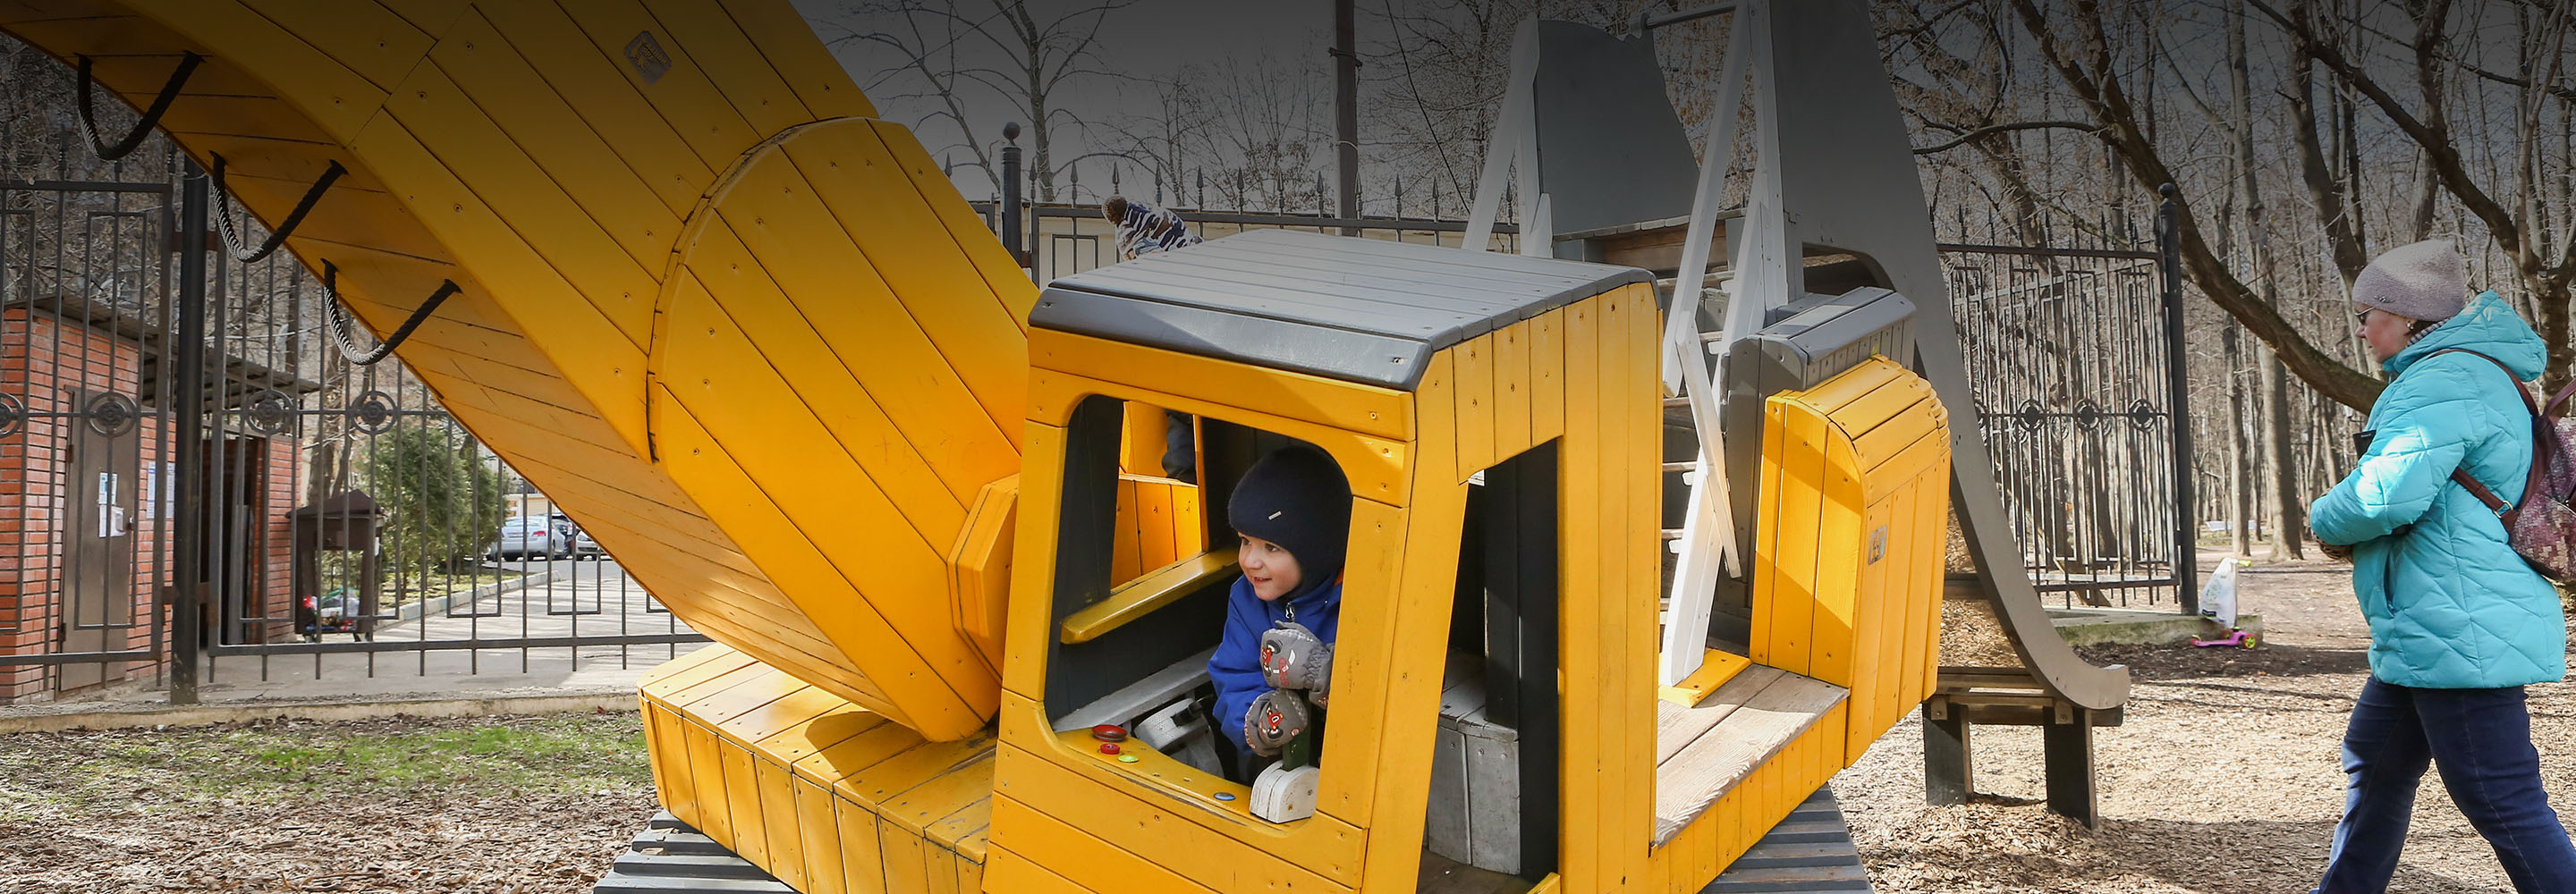 11 потрясающих детских площадок Москвы